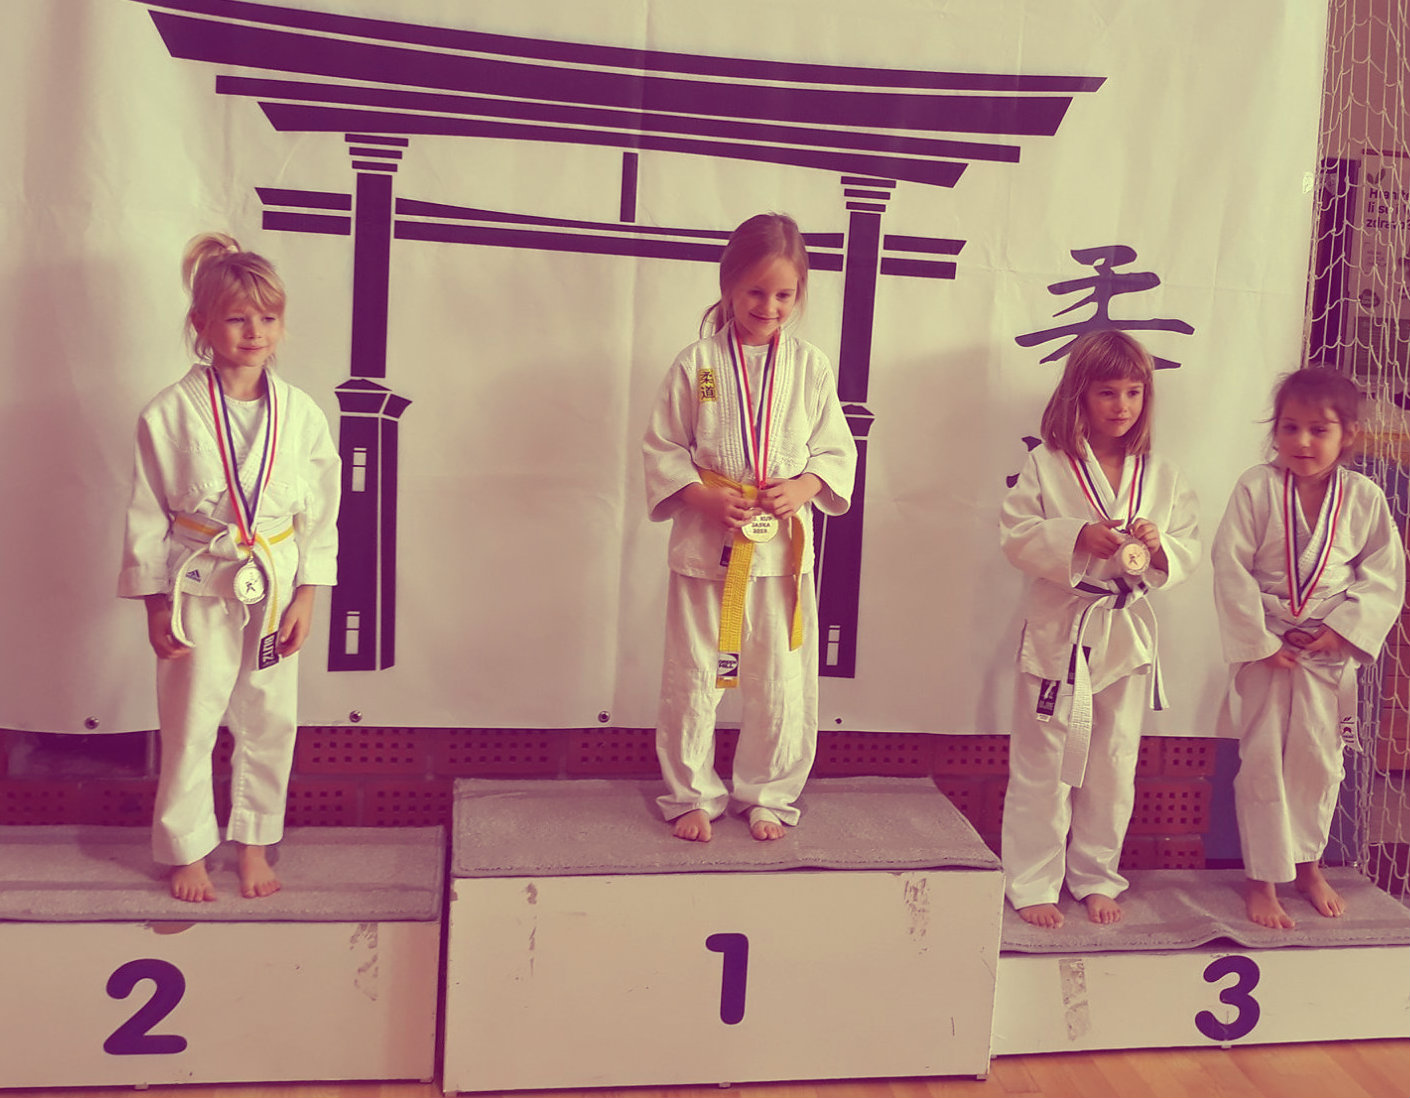 judoistka judo kluba bela krajina,Maruša Matjašič osvoji 3. mesto